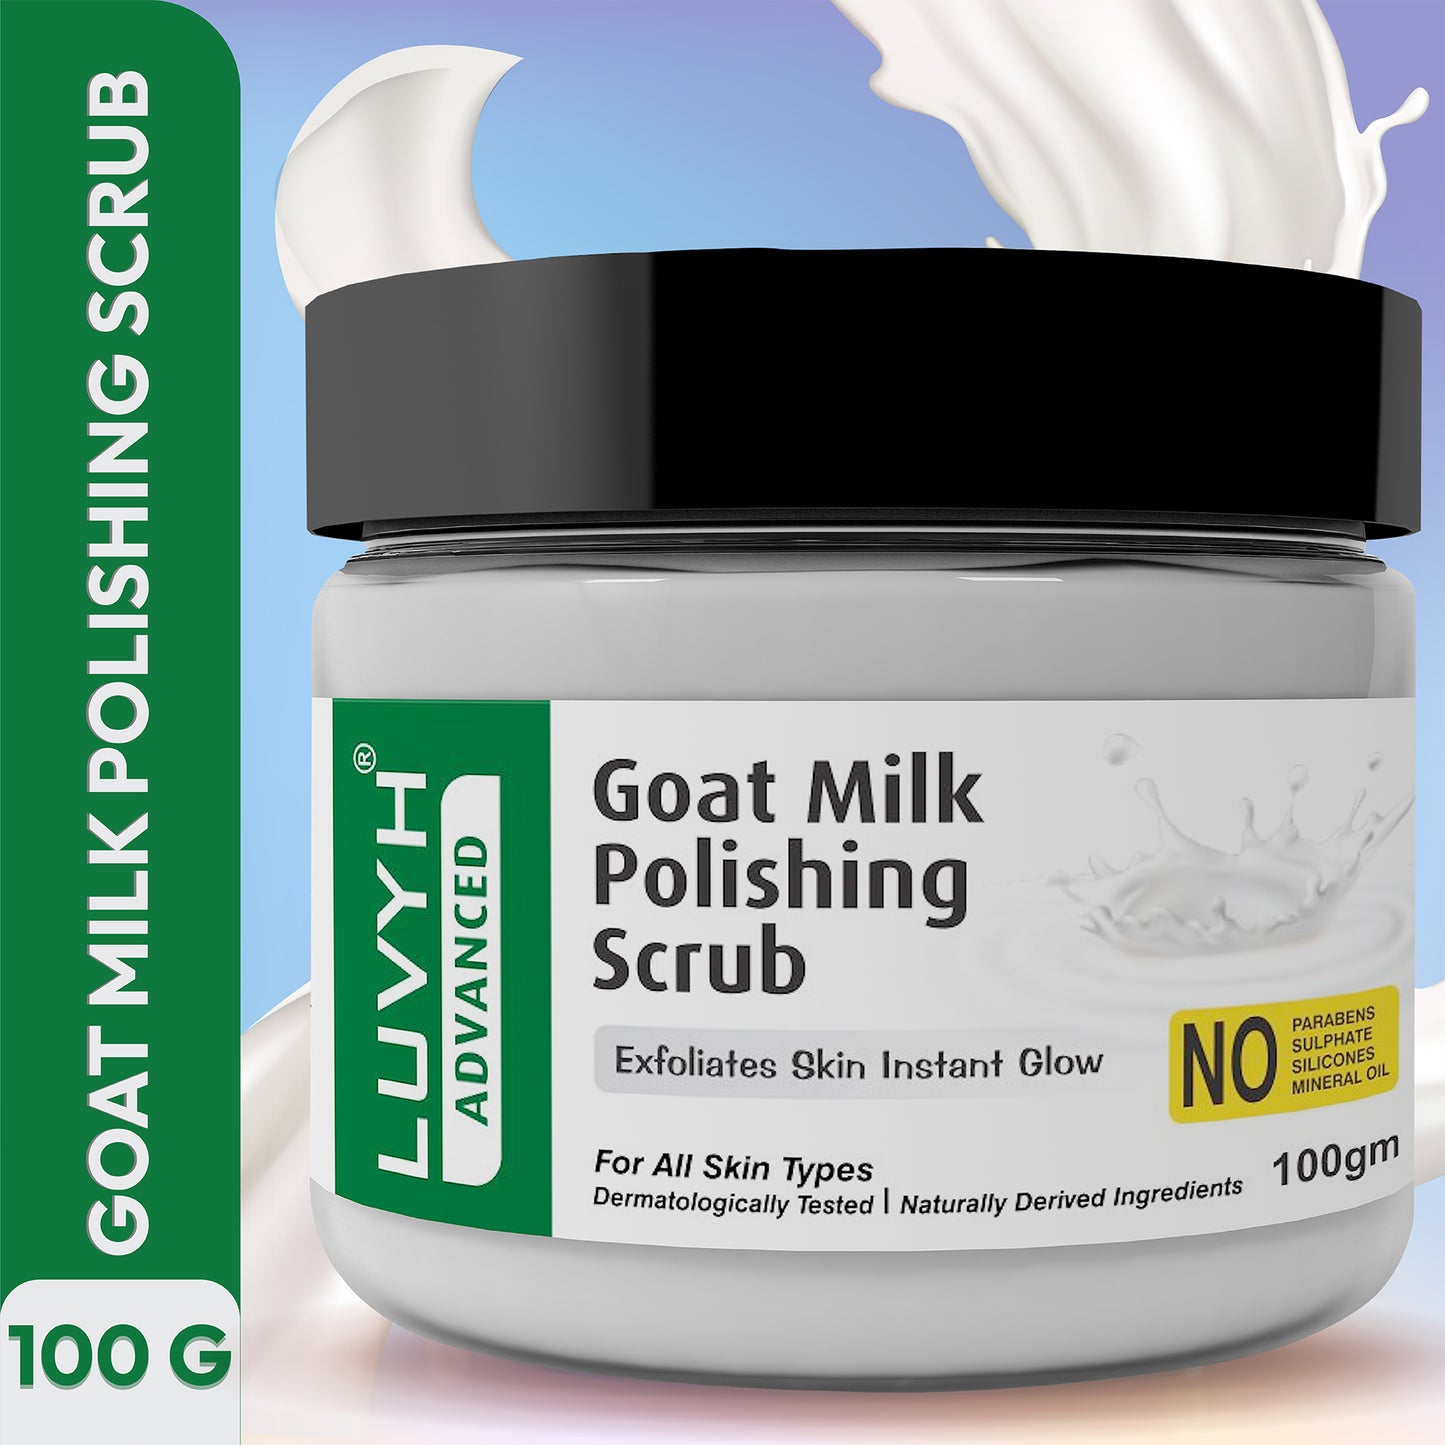 Goat Milk Polishing Scrub